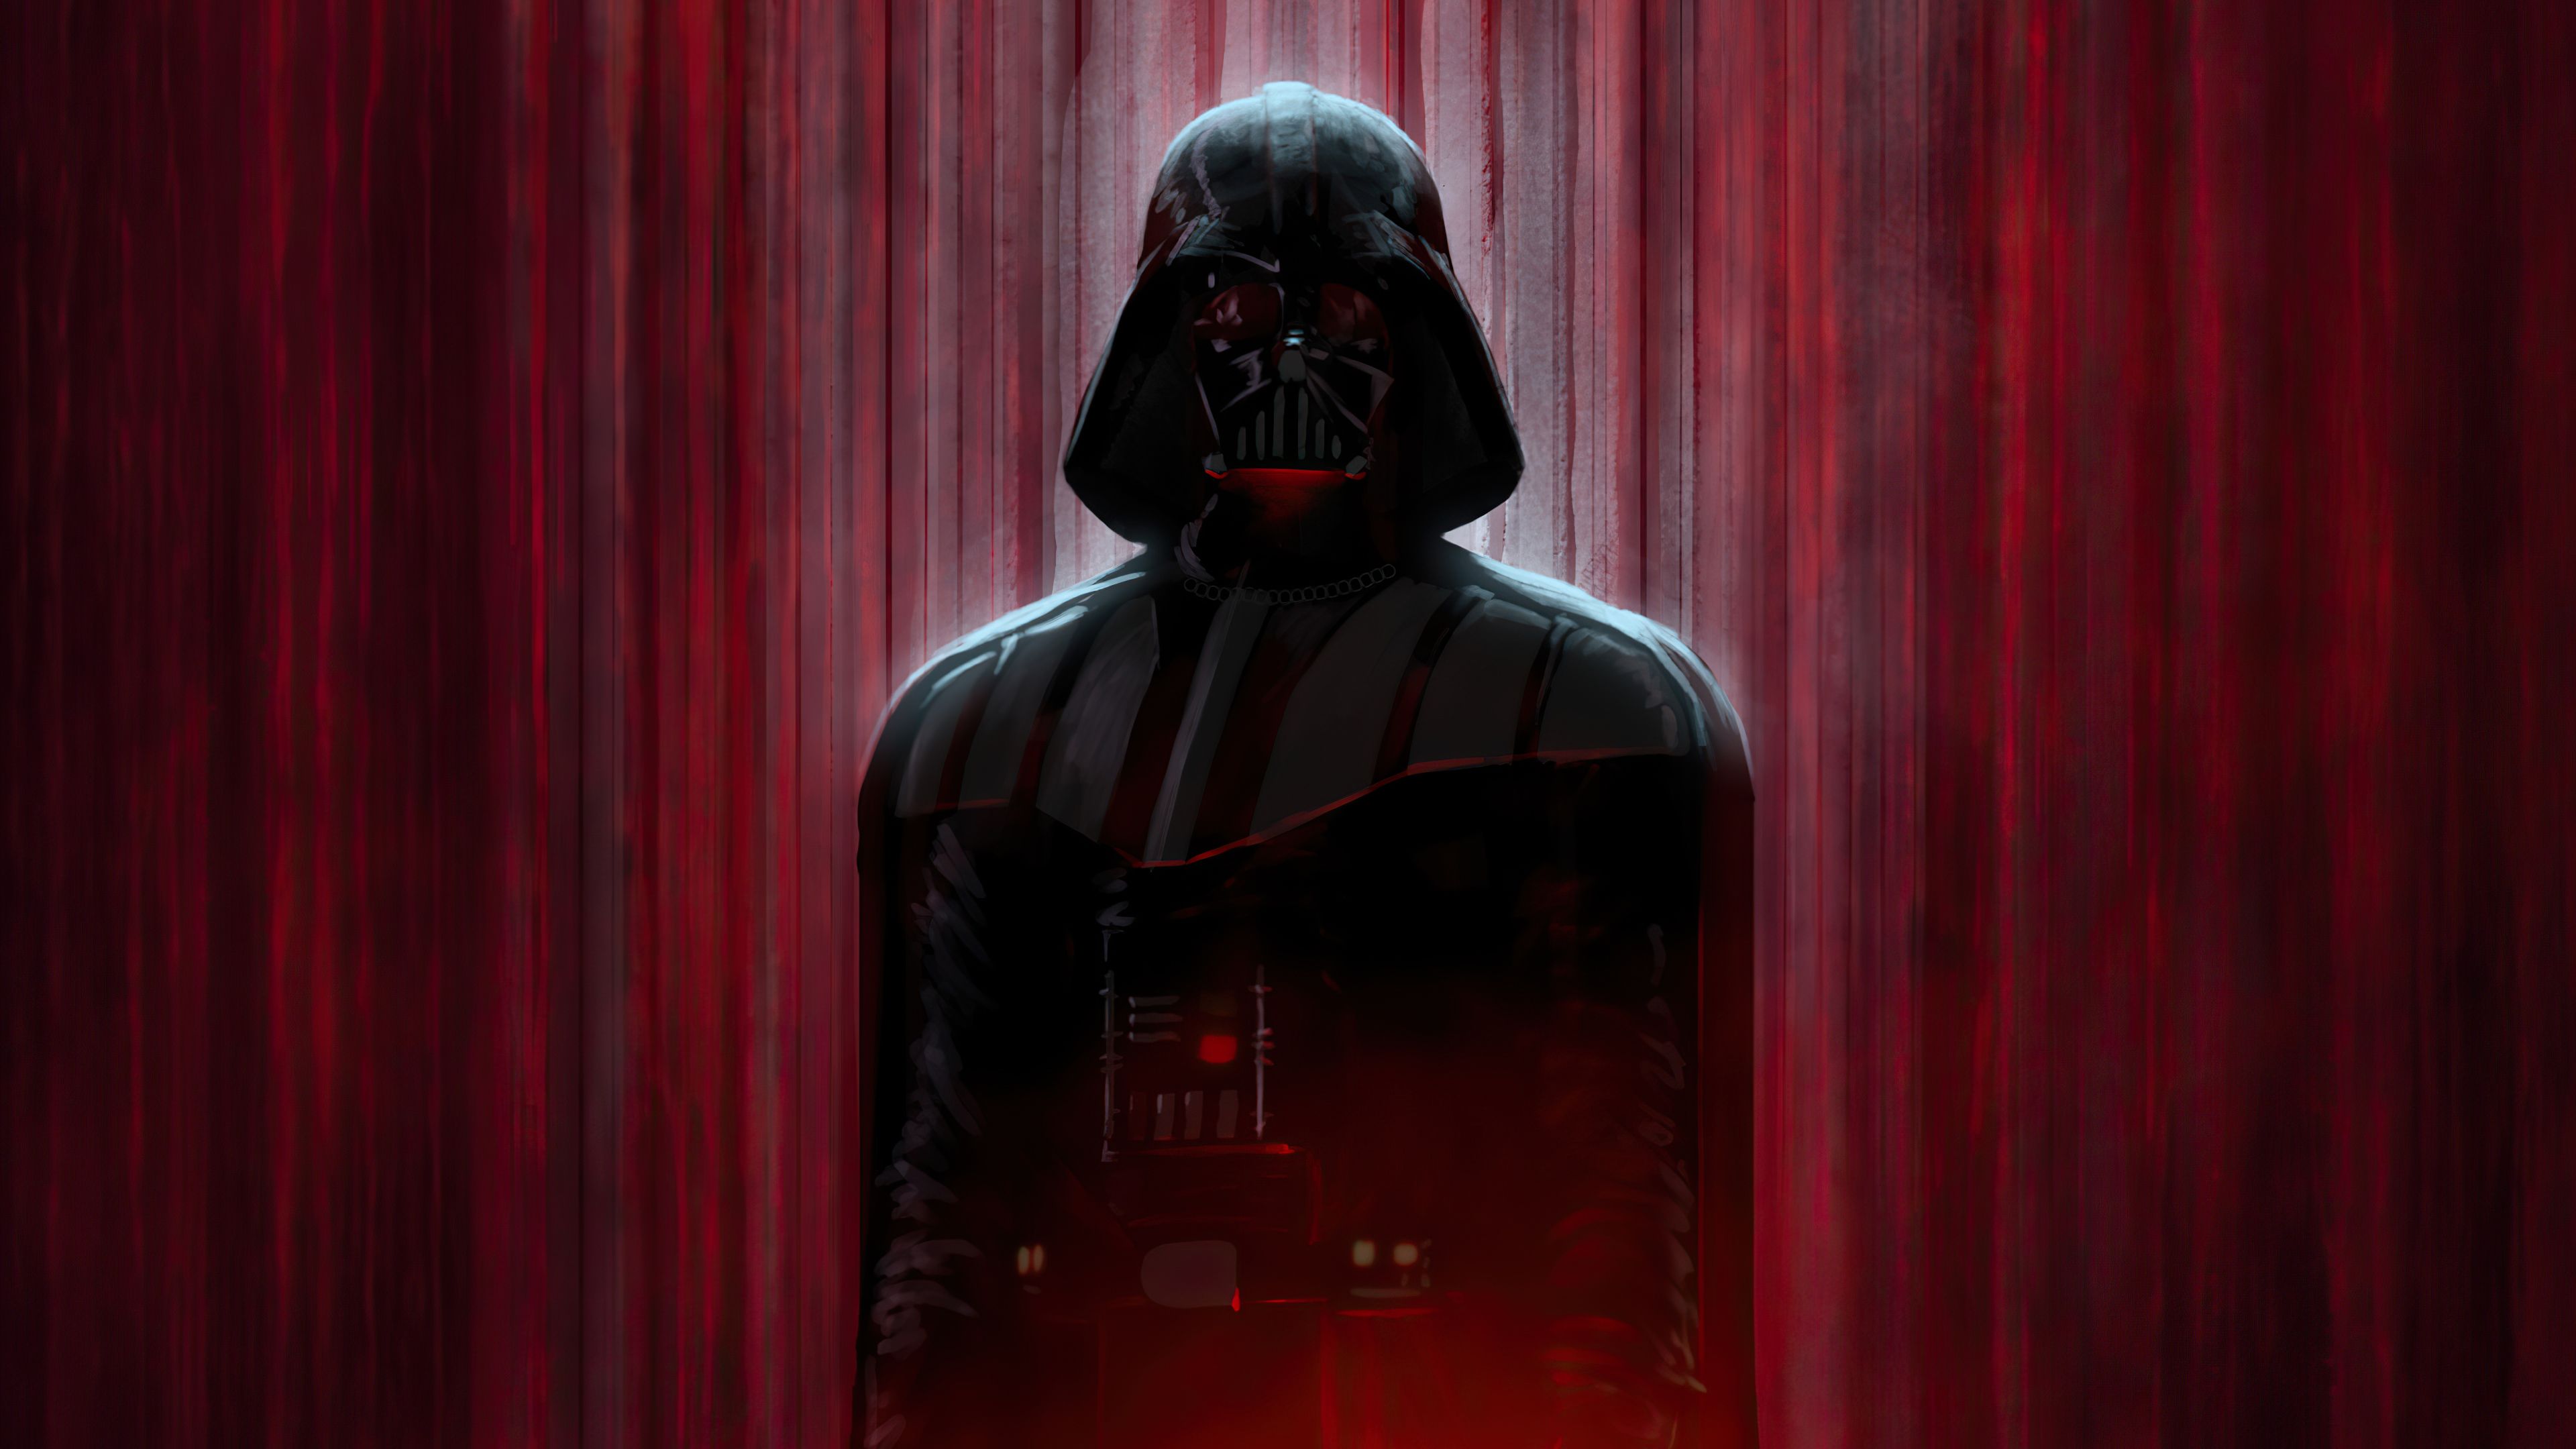 Darth Vader in shadows Wallpaper 4k Ultra HD